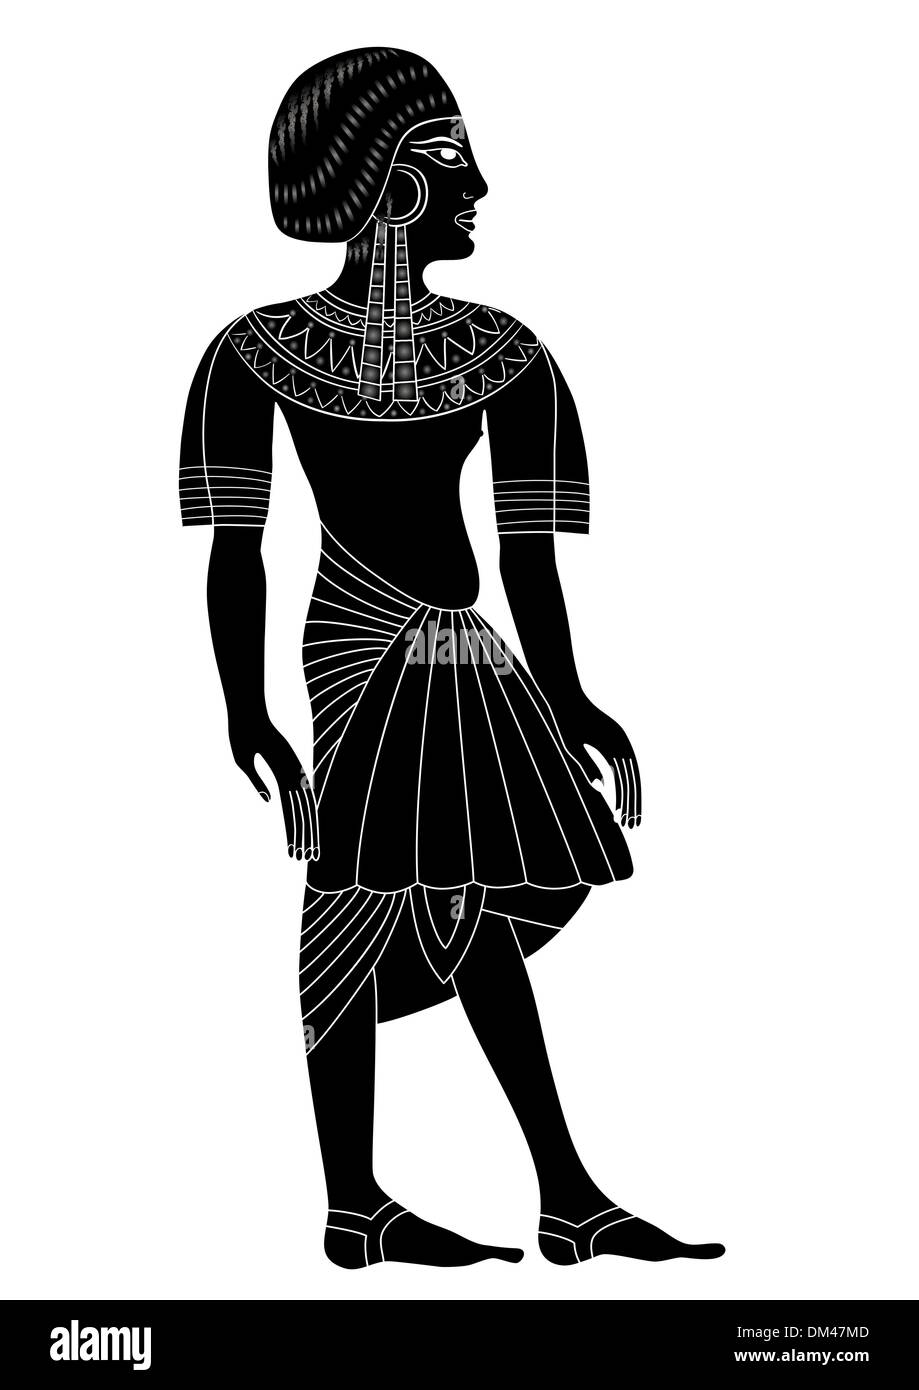 Frau des alten Ägypten - Vektor Stock Vektor